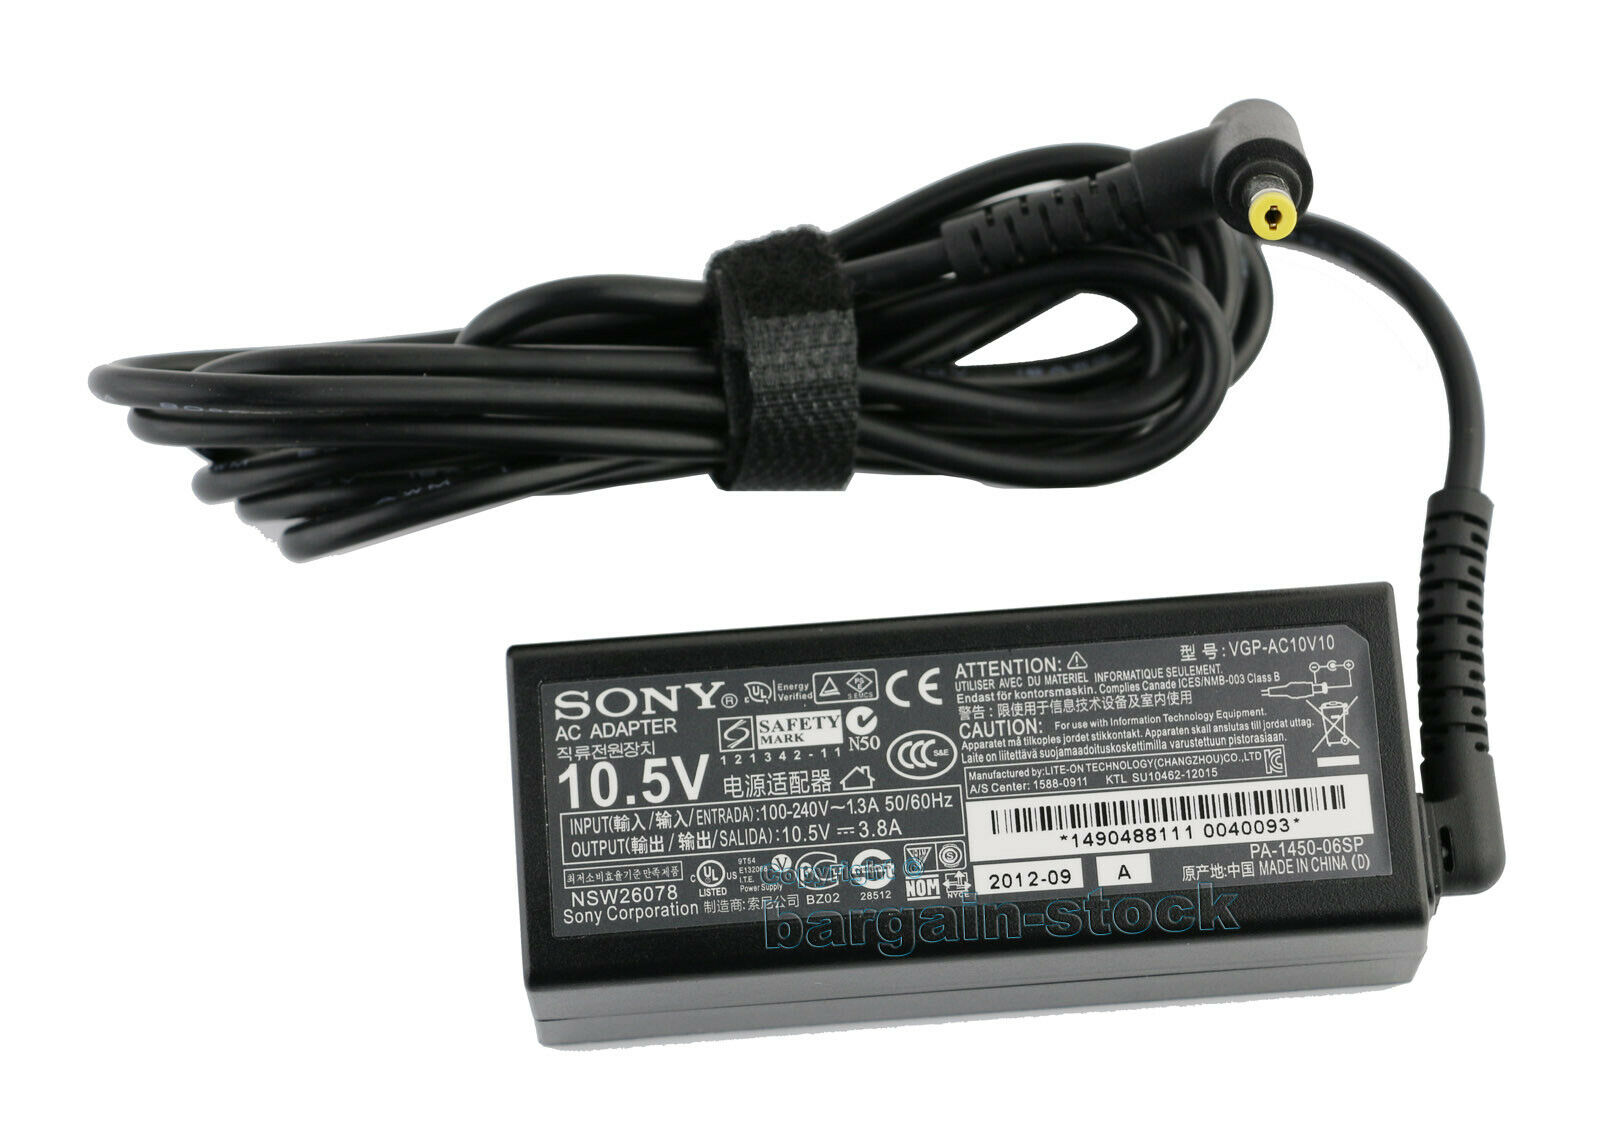 Original AC Adapter Charger For Sony VAIO A12 10.5V 3.8A 45W Power Supply AC Input: AC 100-240V 1.3A 50/60Hz DC Outpu